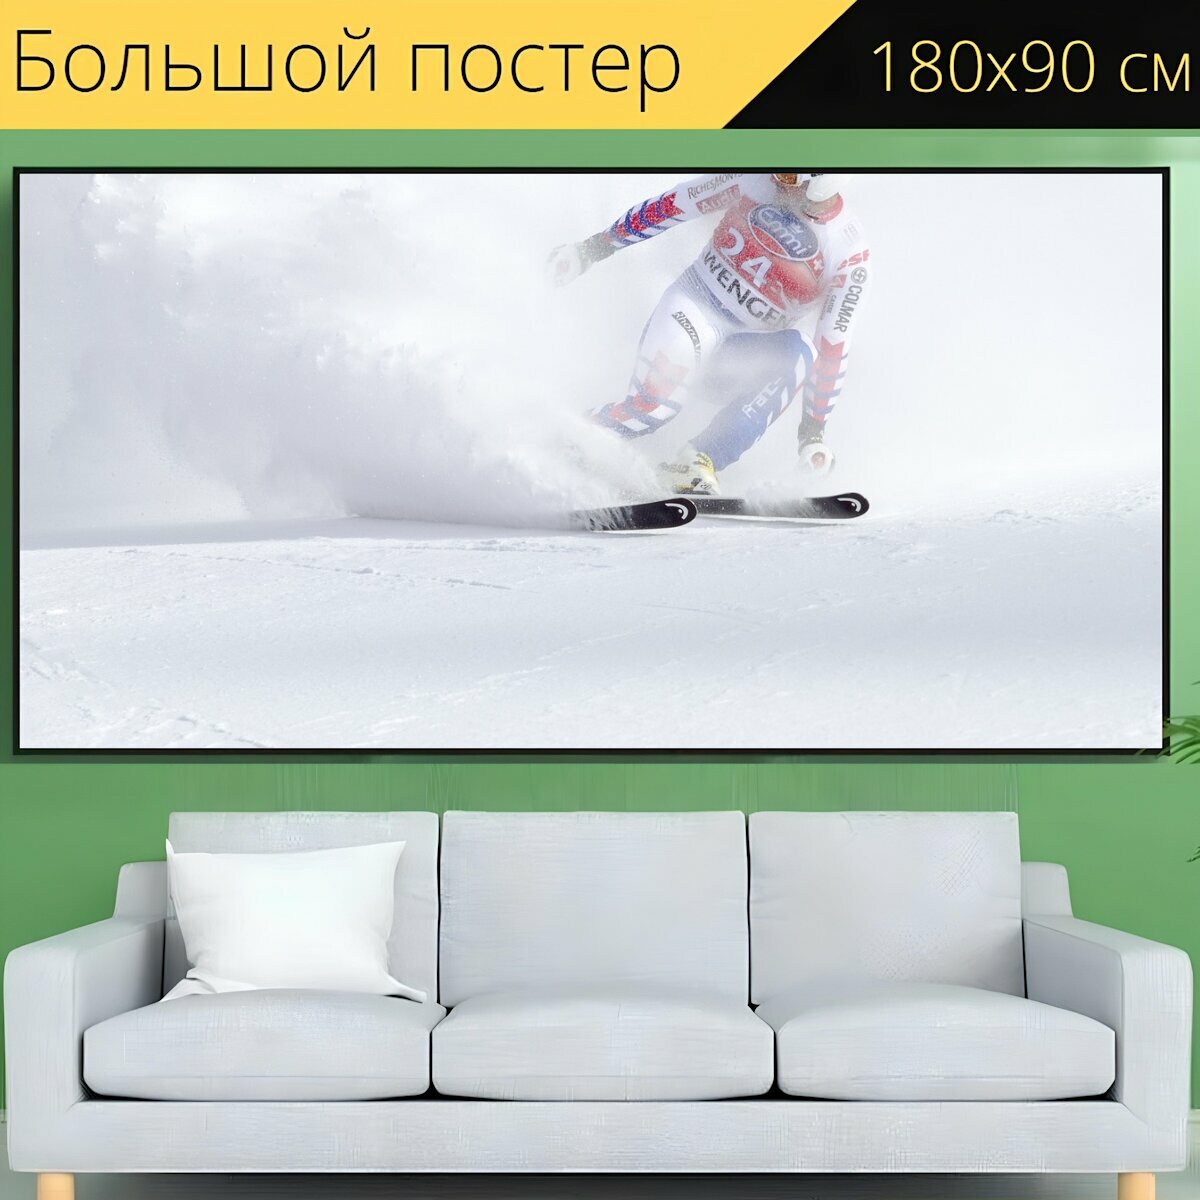 Большой постер "Лыжные гонки, кубок мира, спорт" 180 x 90 см. для интерьера